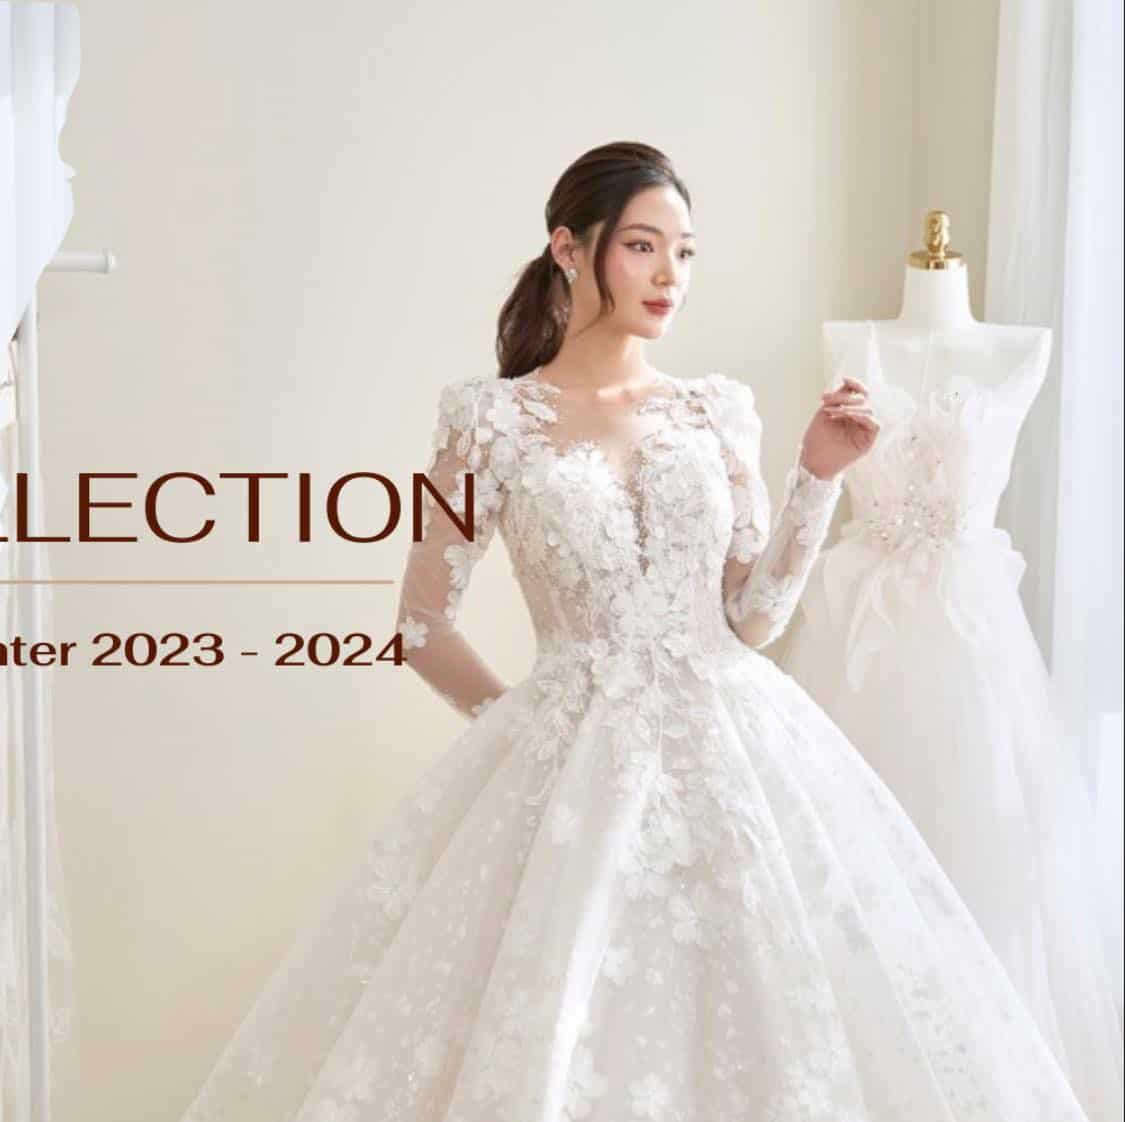 8 Studio cho thuê váy cưới đẹp nhất quận Cầu Giấy, Hà Nội - ALONGWALKER